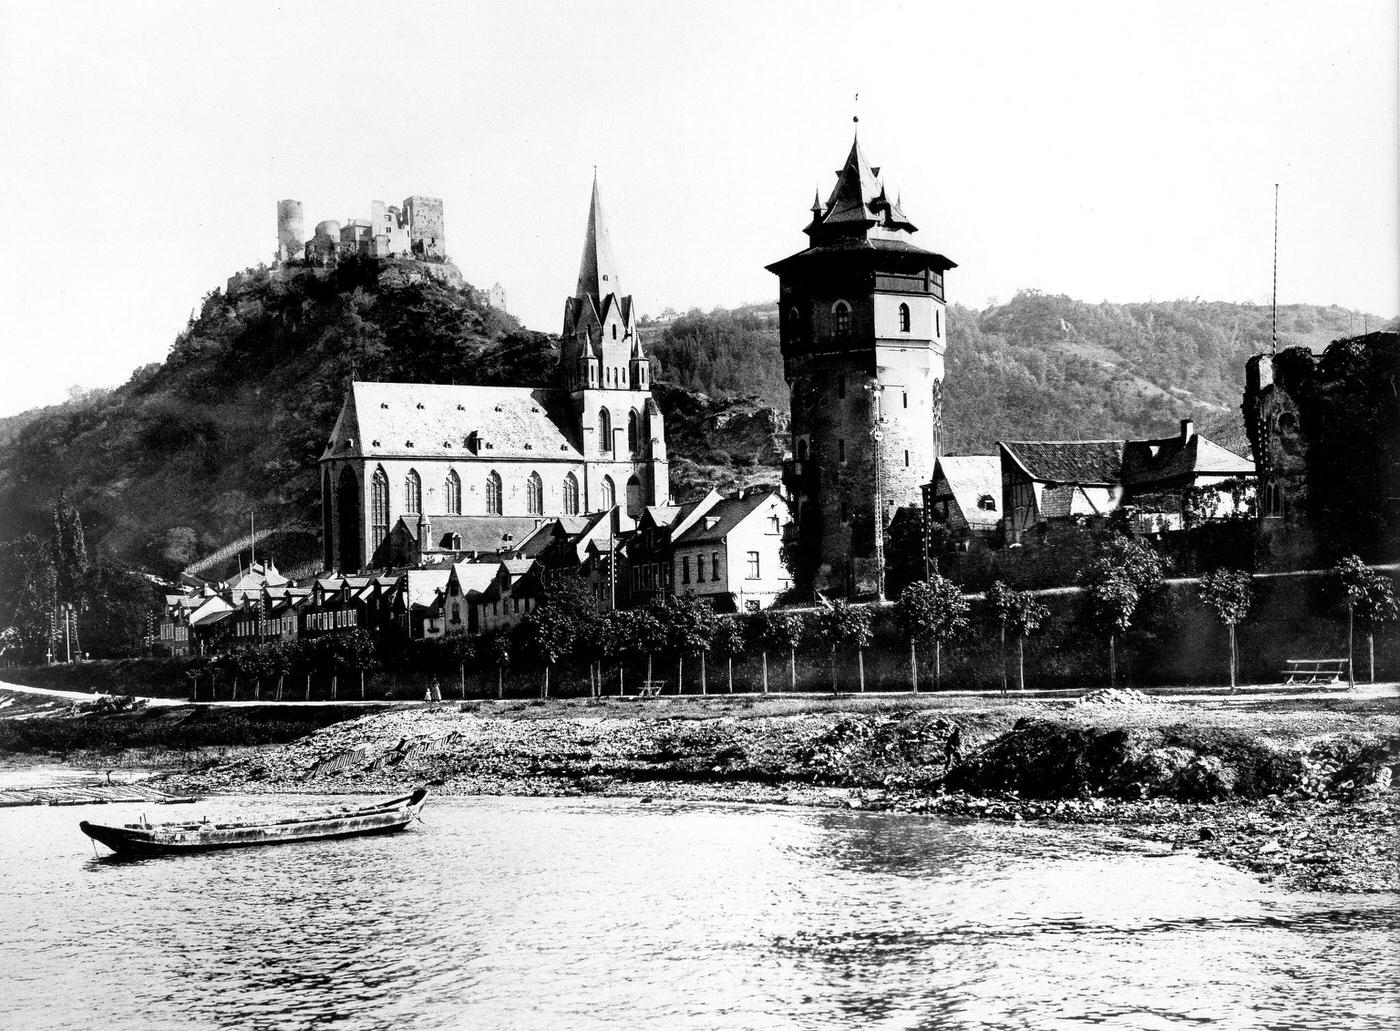 Liebfrauen Church and Schoenburg, Oberwesel, Germany, around 1900.